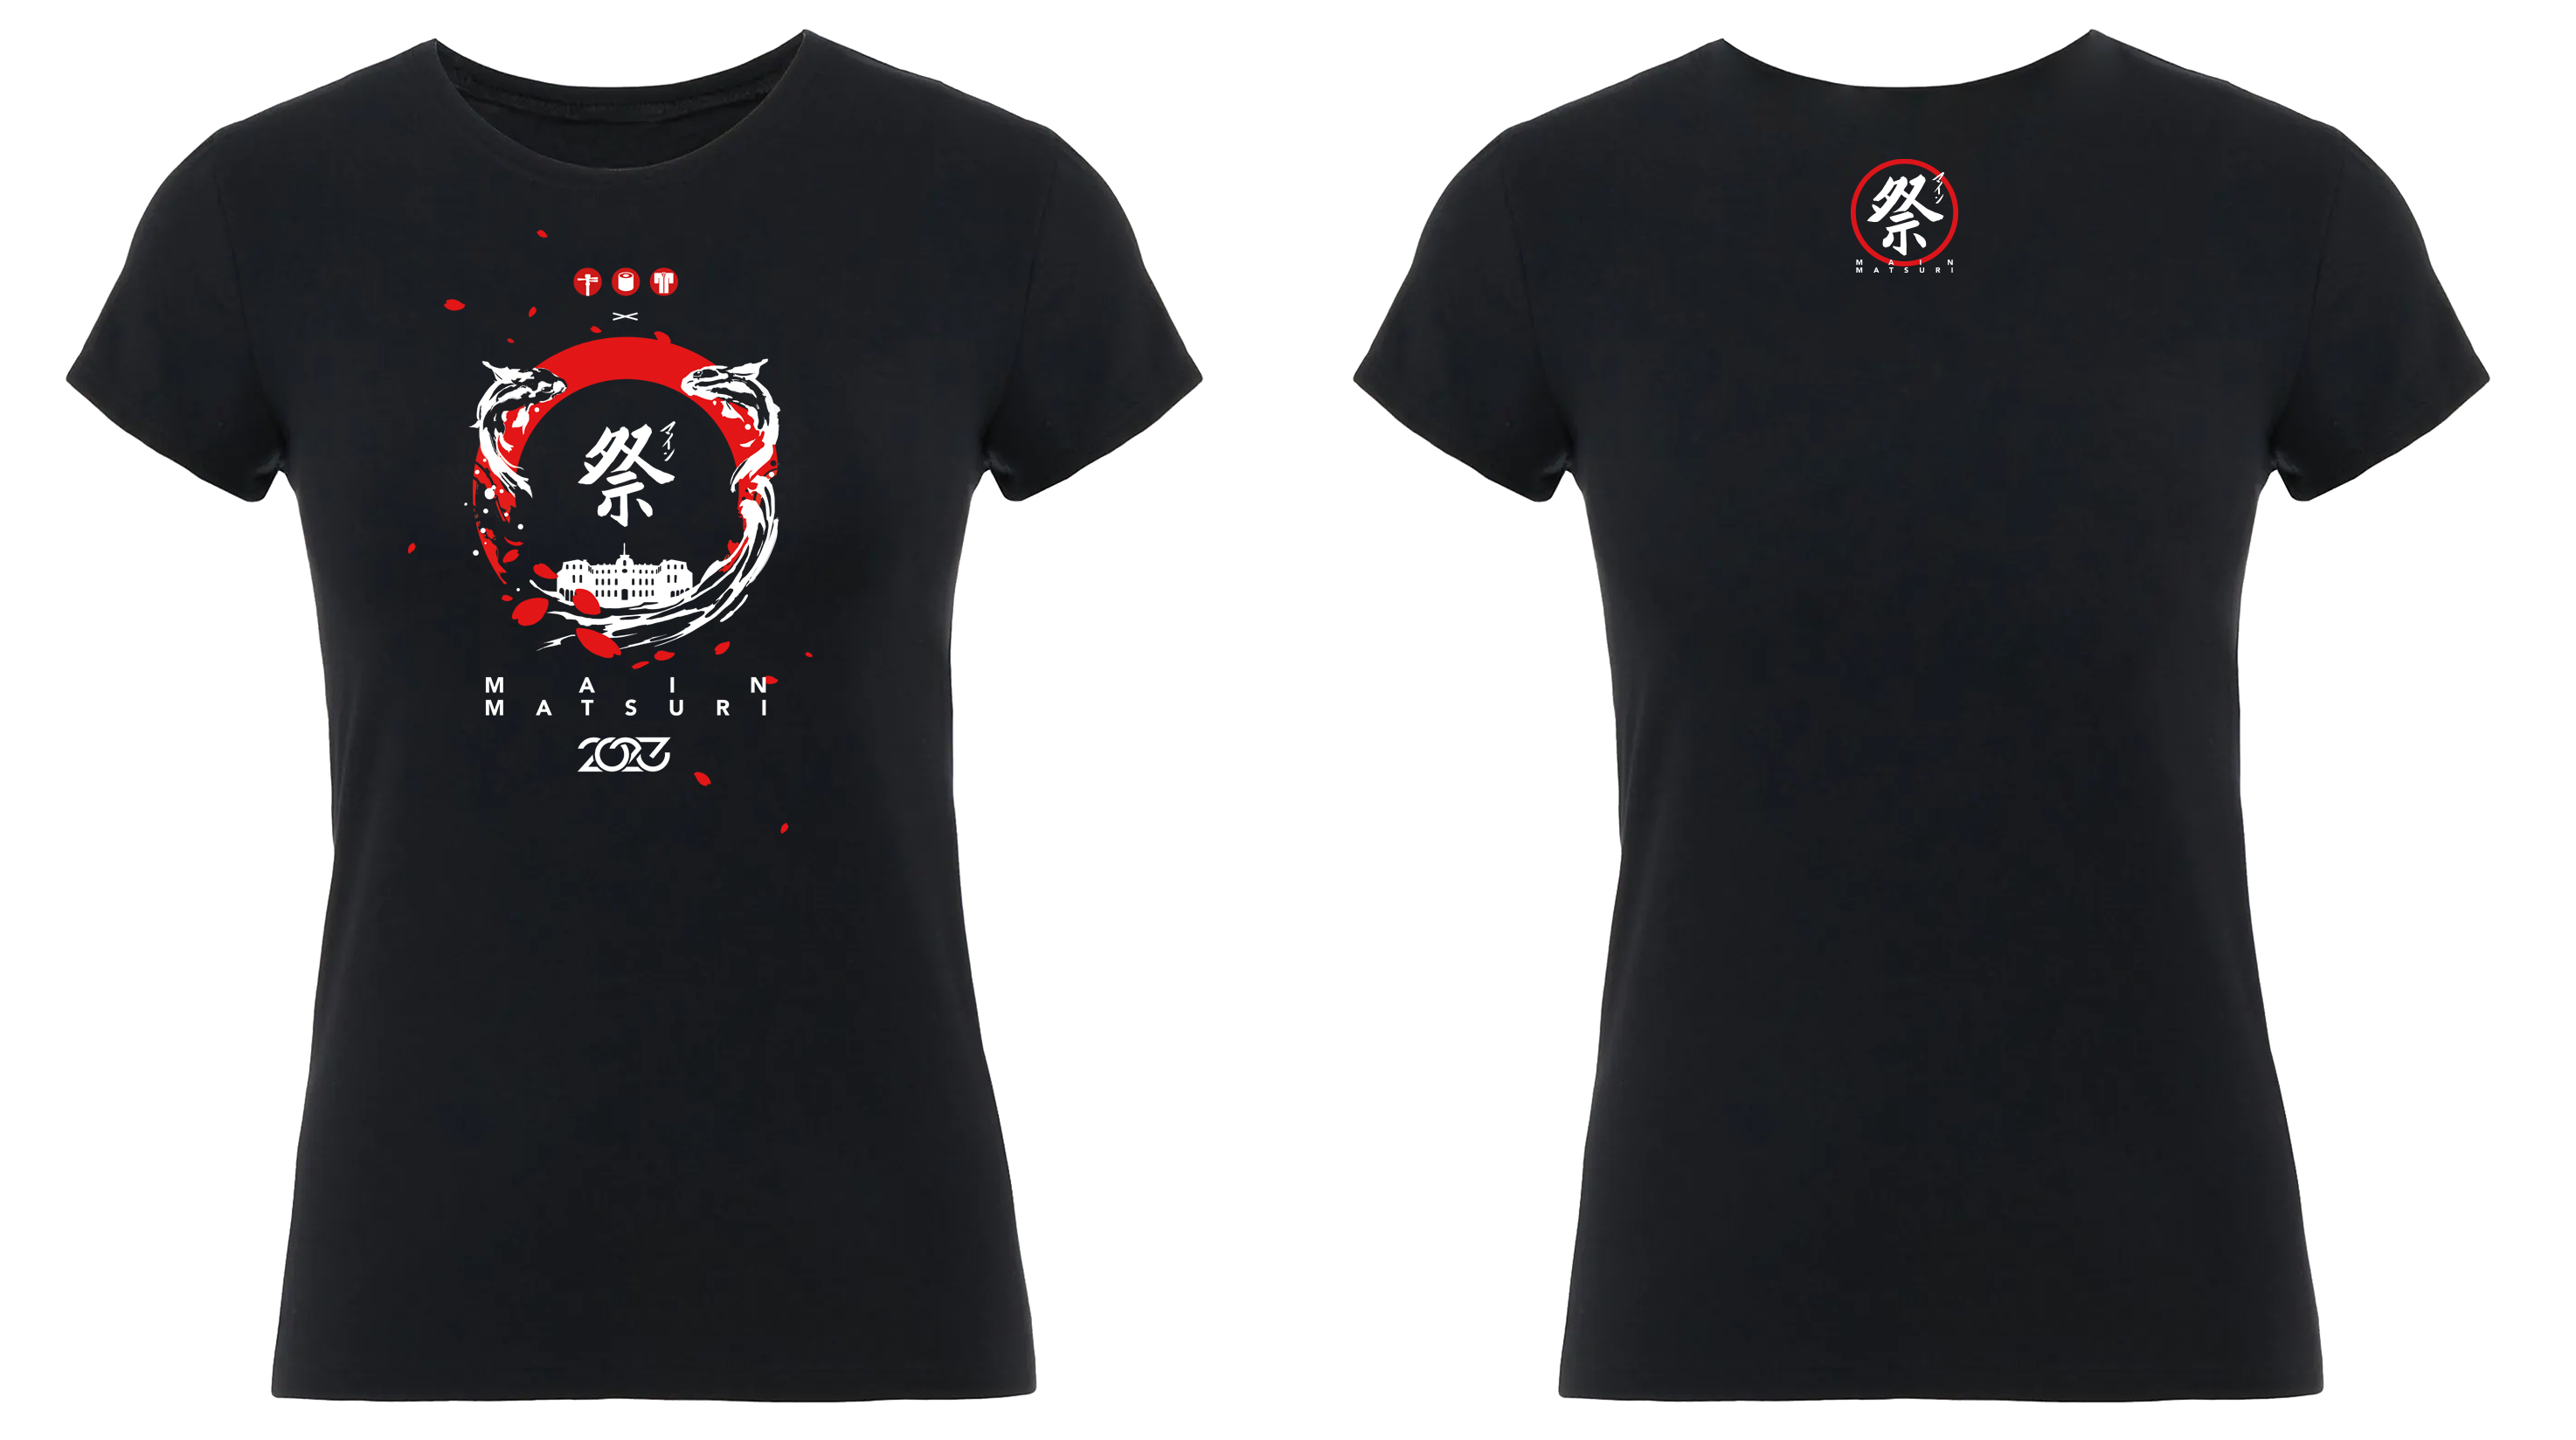 Main-Matsuri-T-Shirt Edition 2023